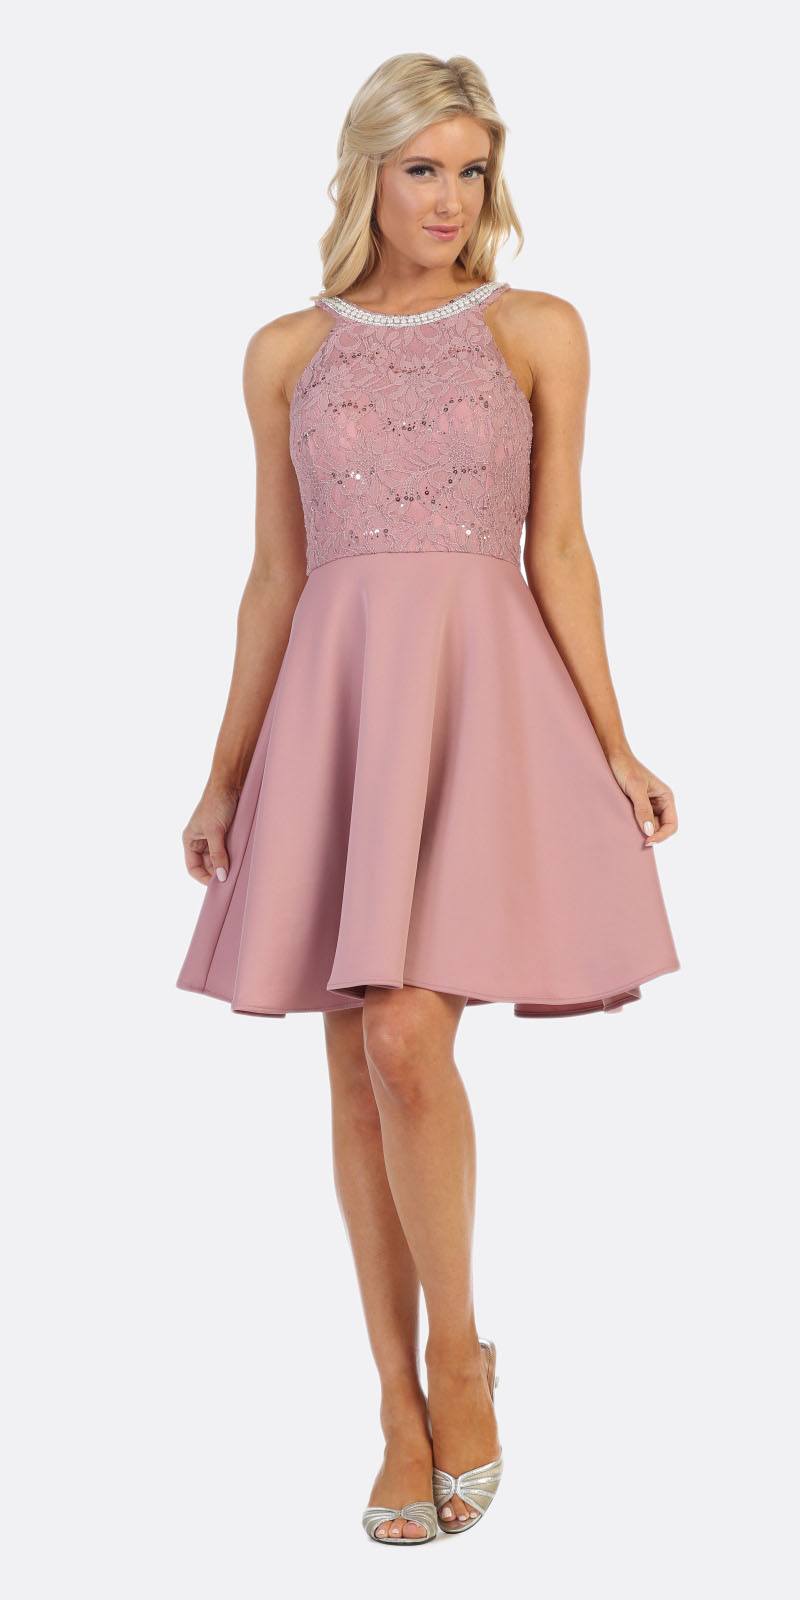 Celavie 6382 Mauve Lace Top Knee-Length Cocktail Dress